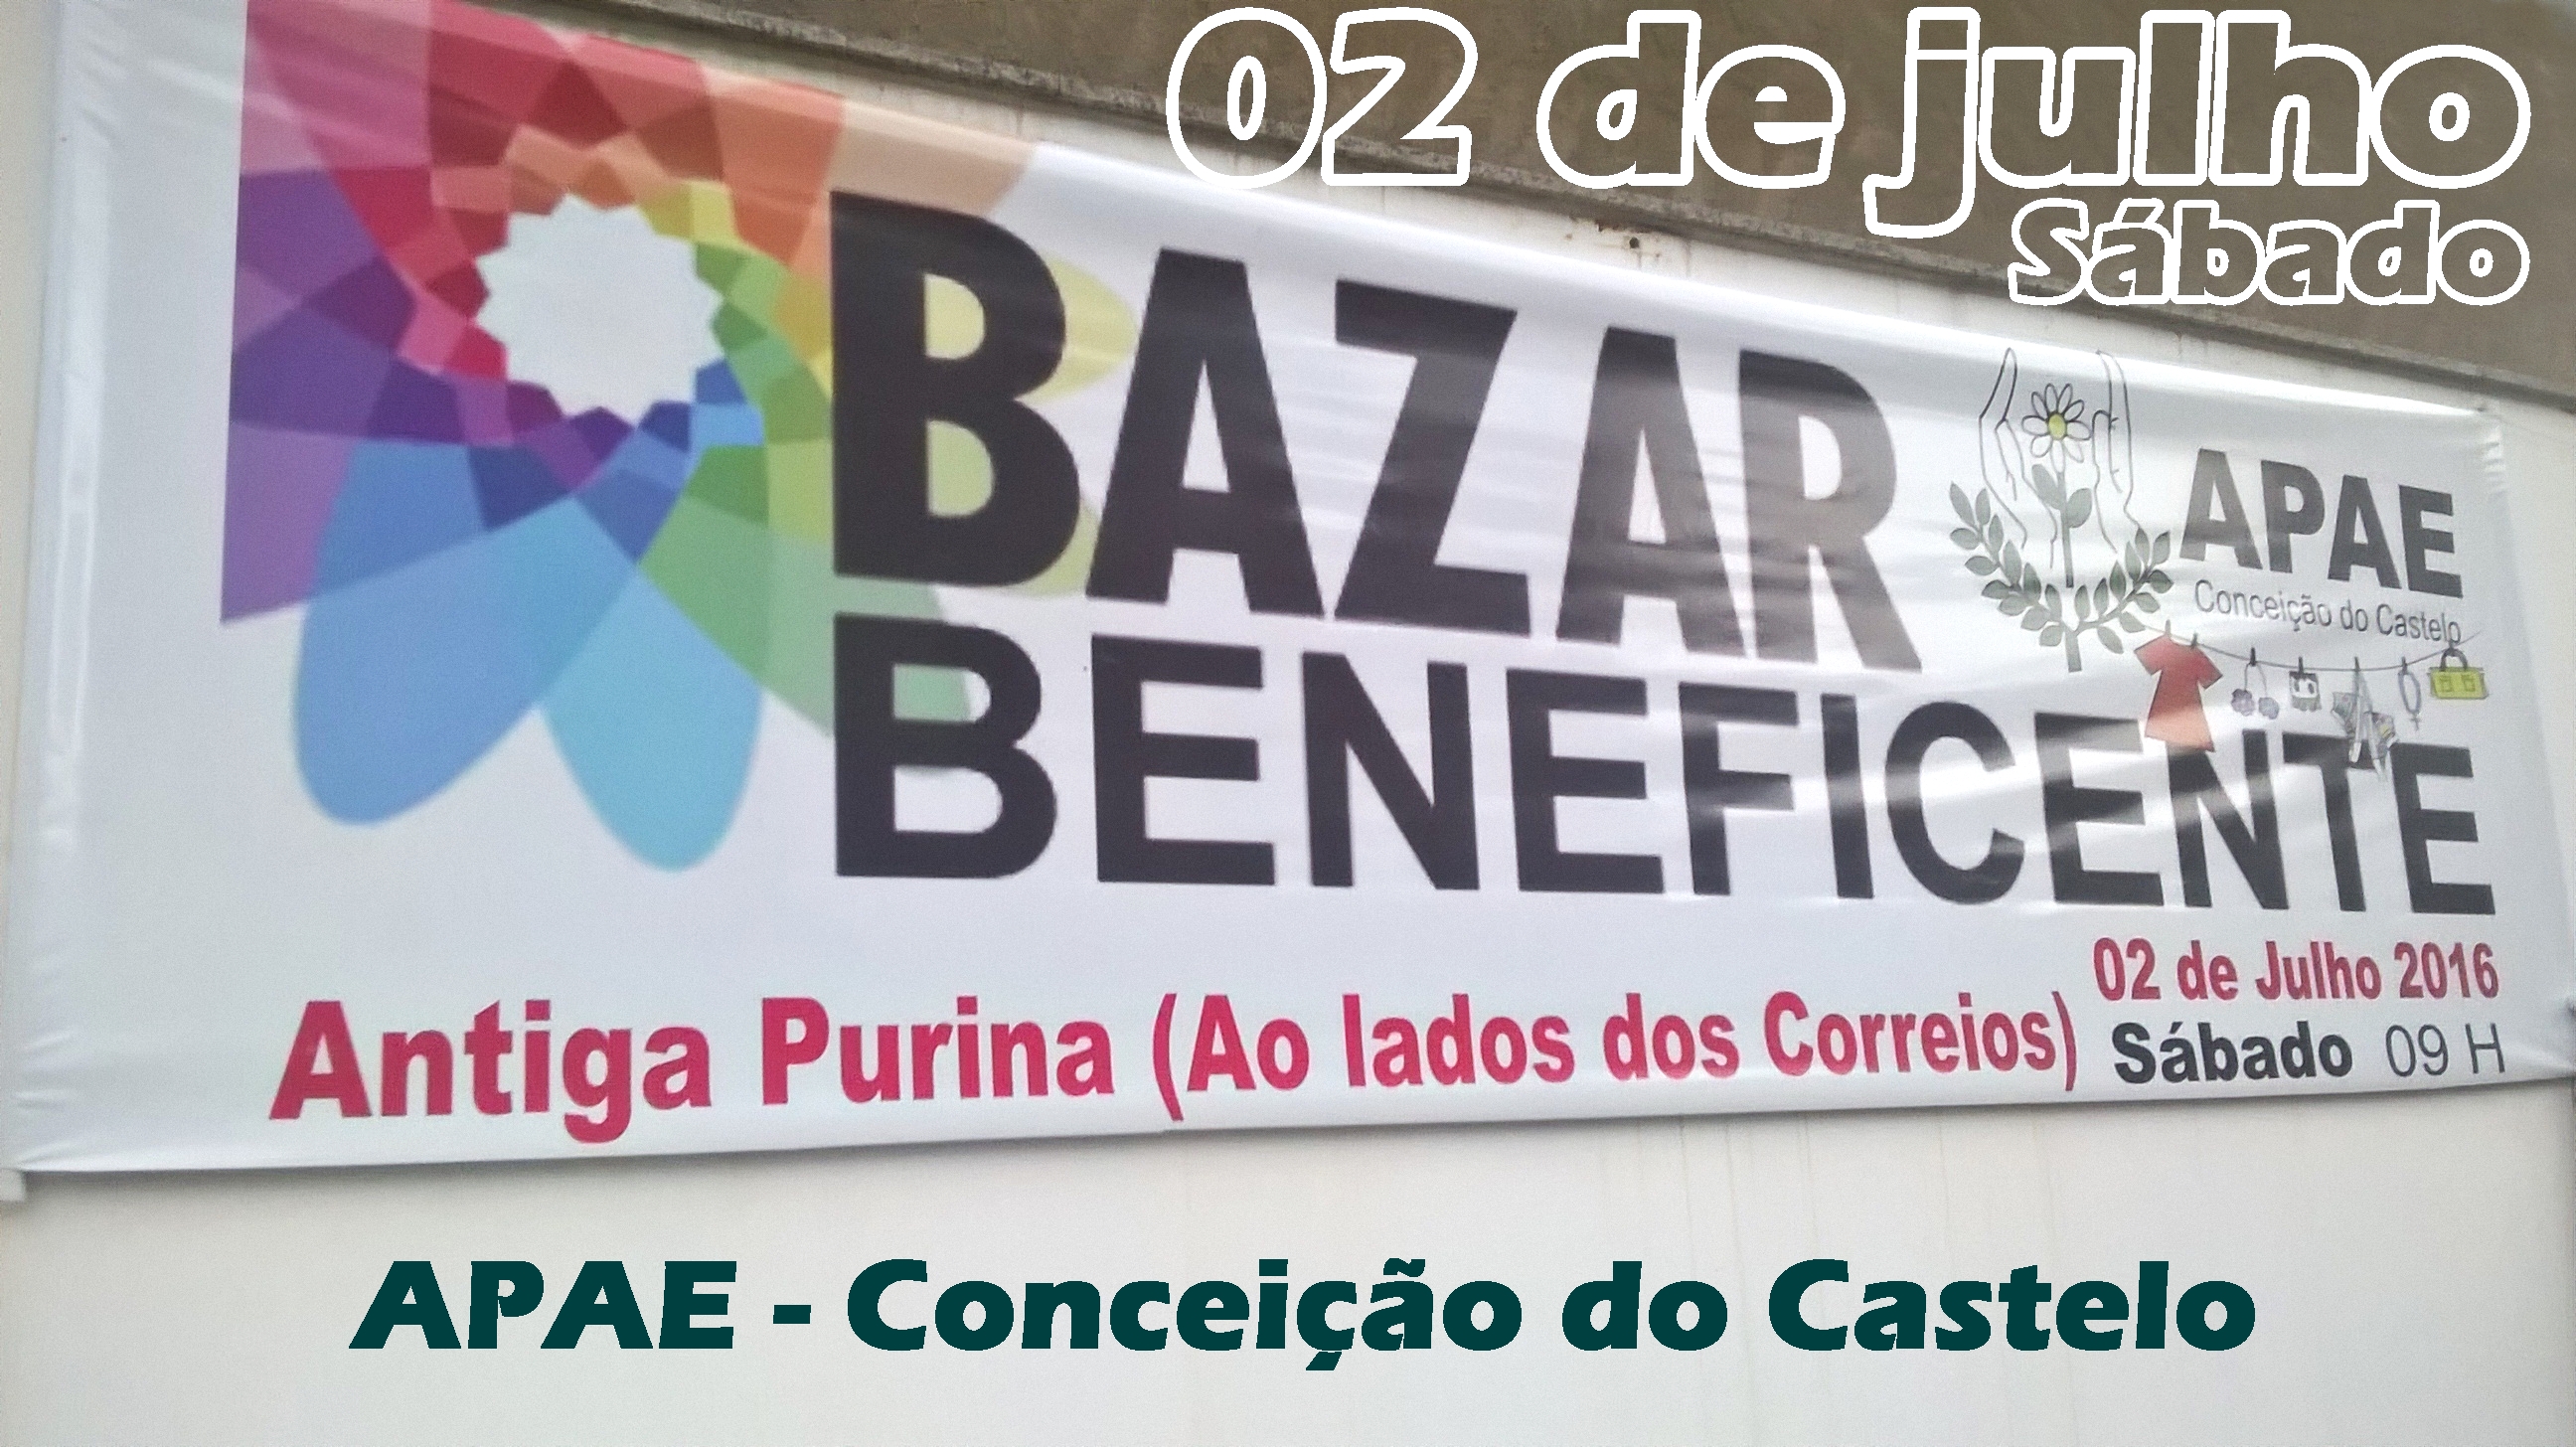 Bazar beneficente a APAE de Conceição do Castelo neste sábado (02)